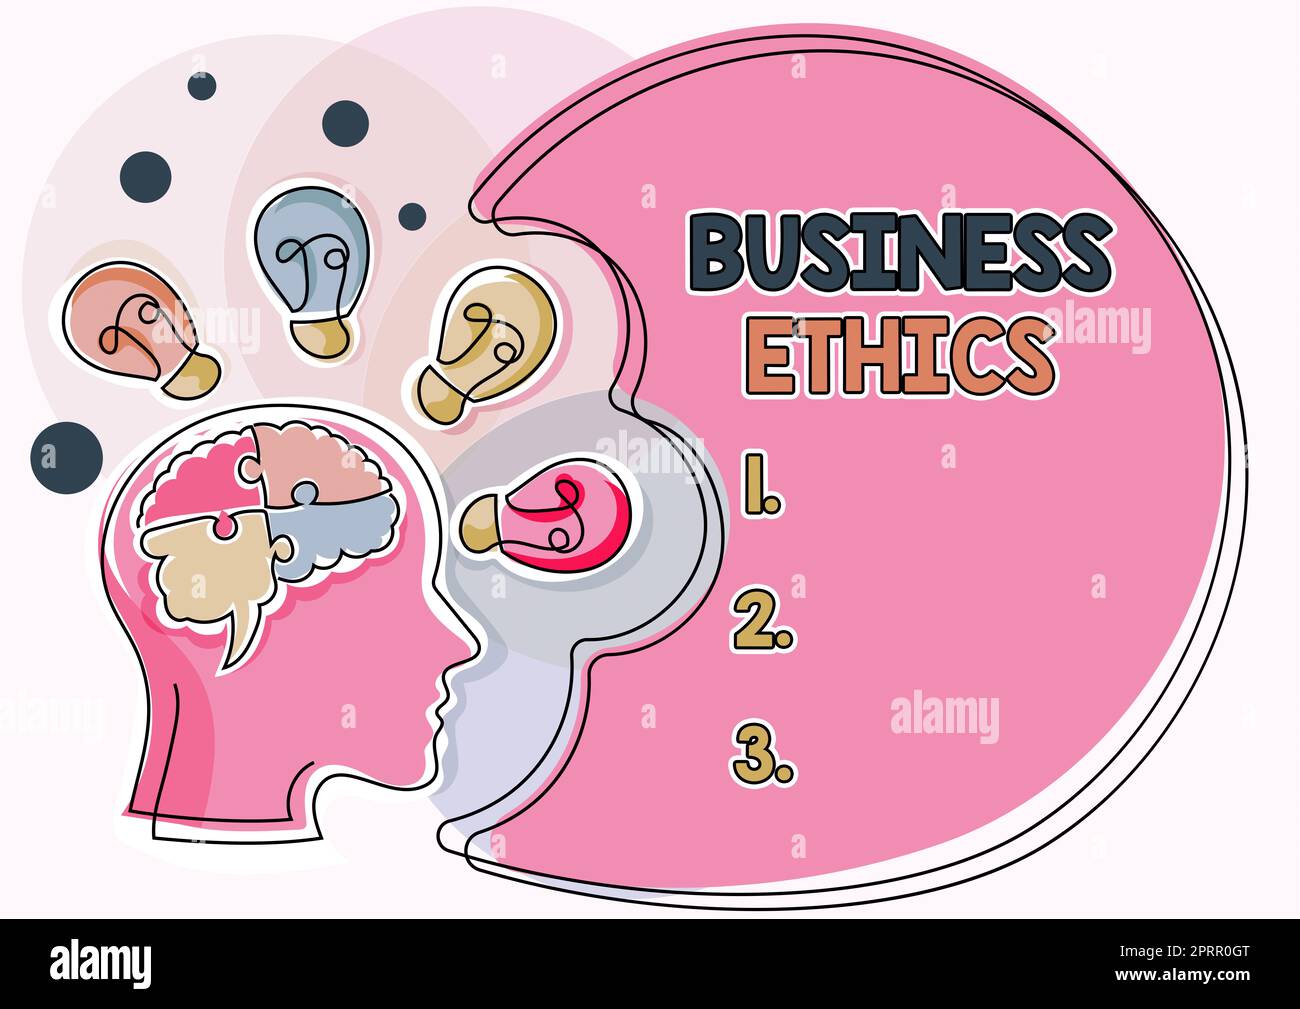 Esposizione concettuale etica aziendale principi morali che guidano il comportamento di un'azienda. Approccio aziendale principi morali che guidano il comportamento di un'azienda Foto Stock